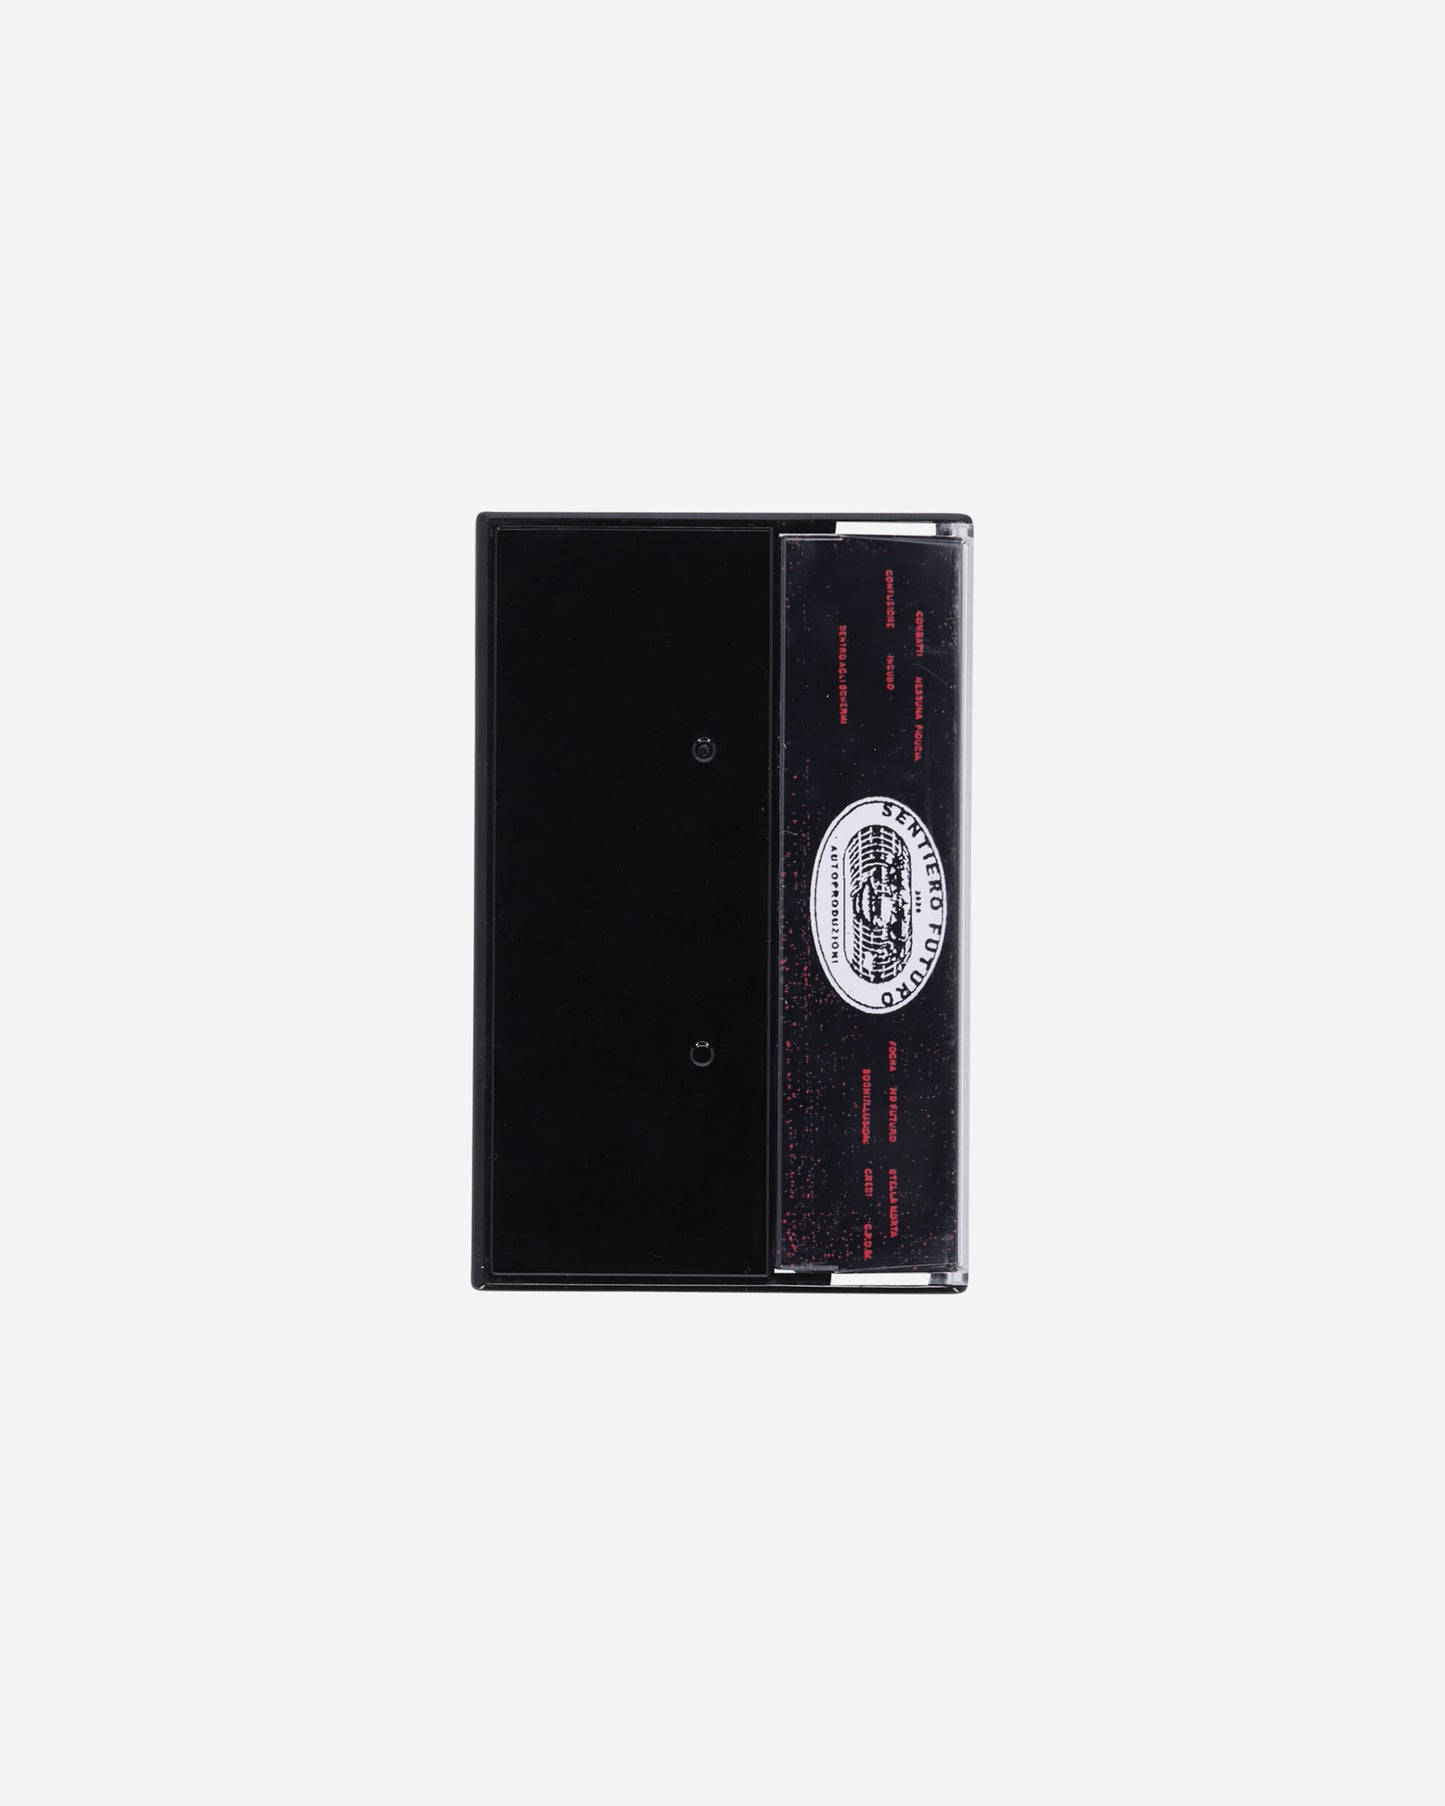 Sentiero Futuro Kobra - Confusione Multi Music Cassettes SF11 001